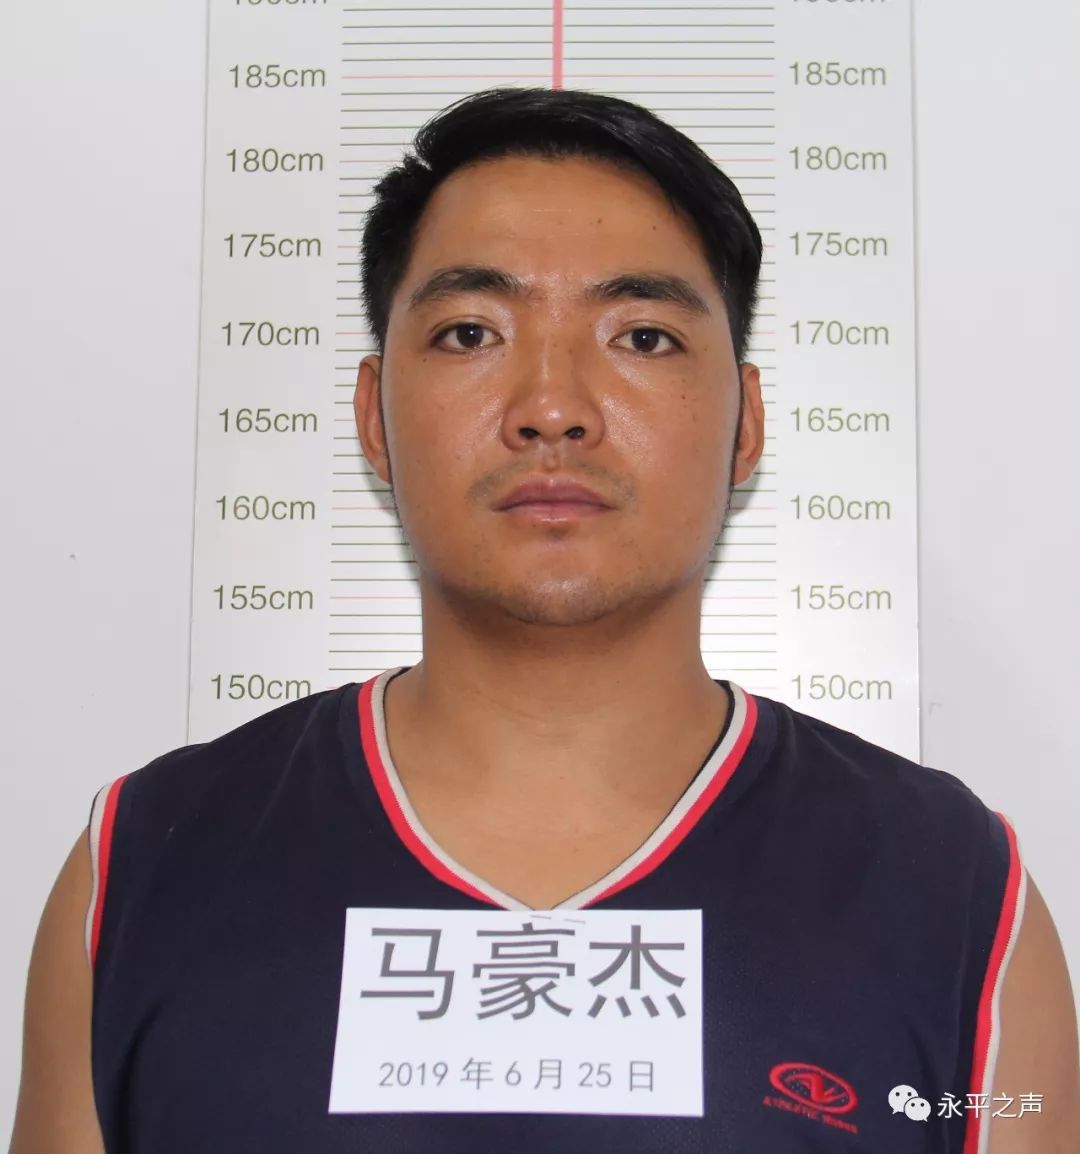 永平县公安局关于公开征集 马义兴犯罪团伙违法犯罪线索的公告